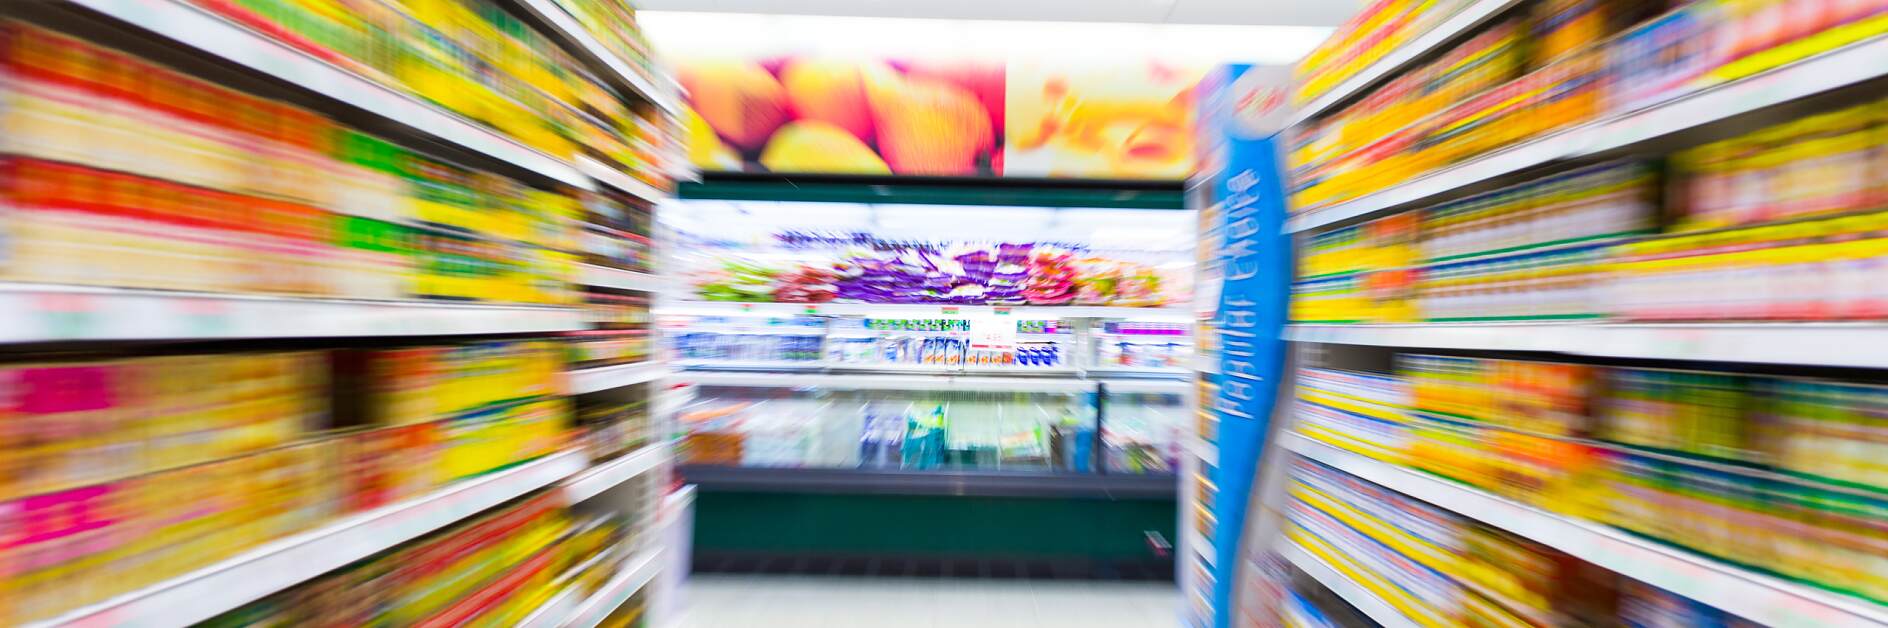 Corsia vuota di un supermercato, motion blur